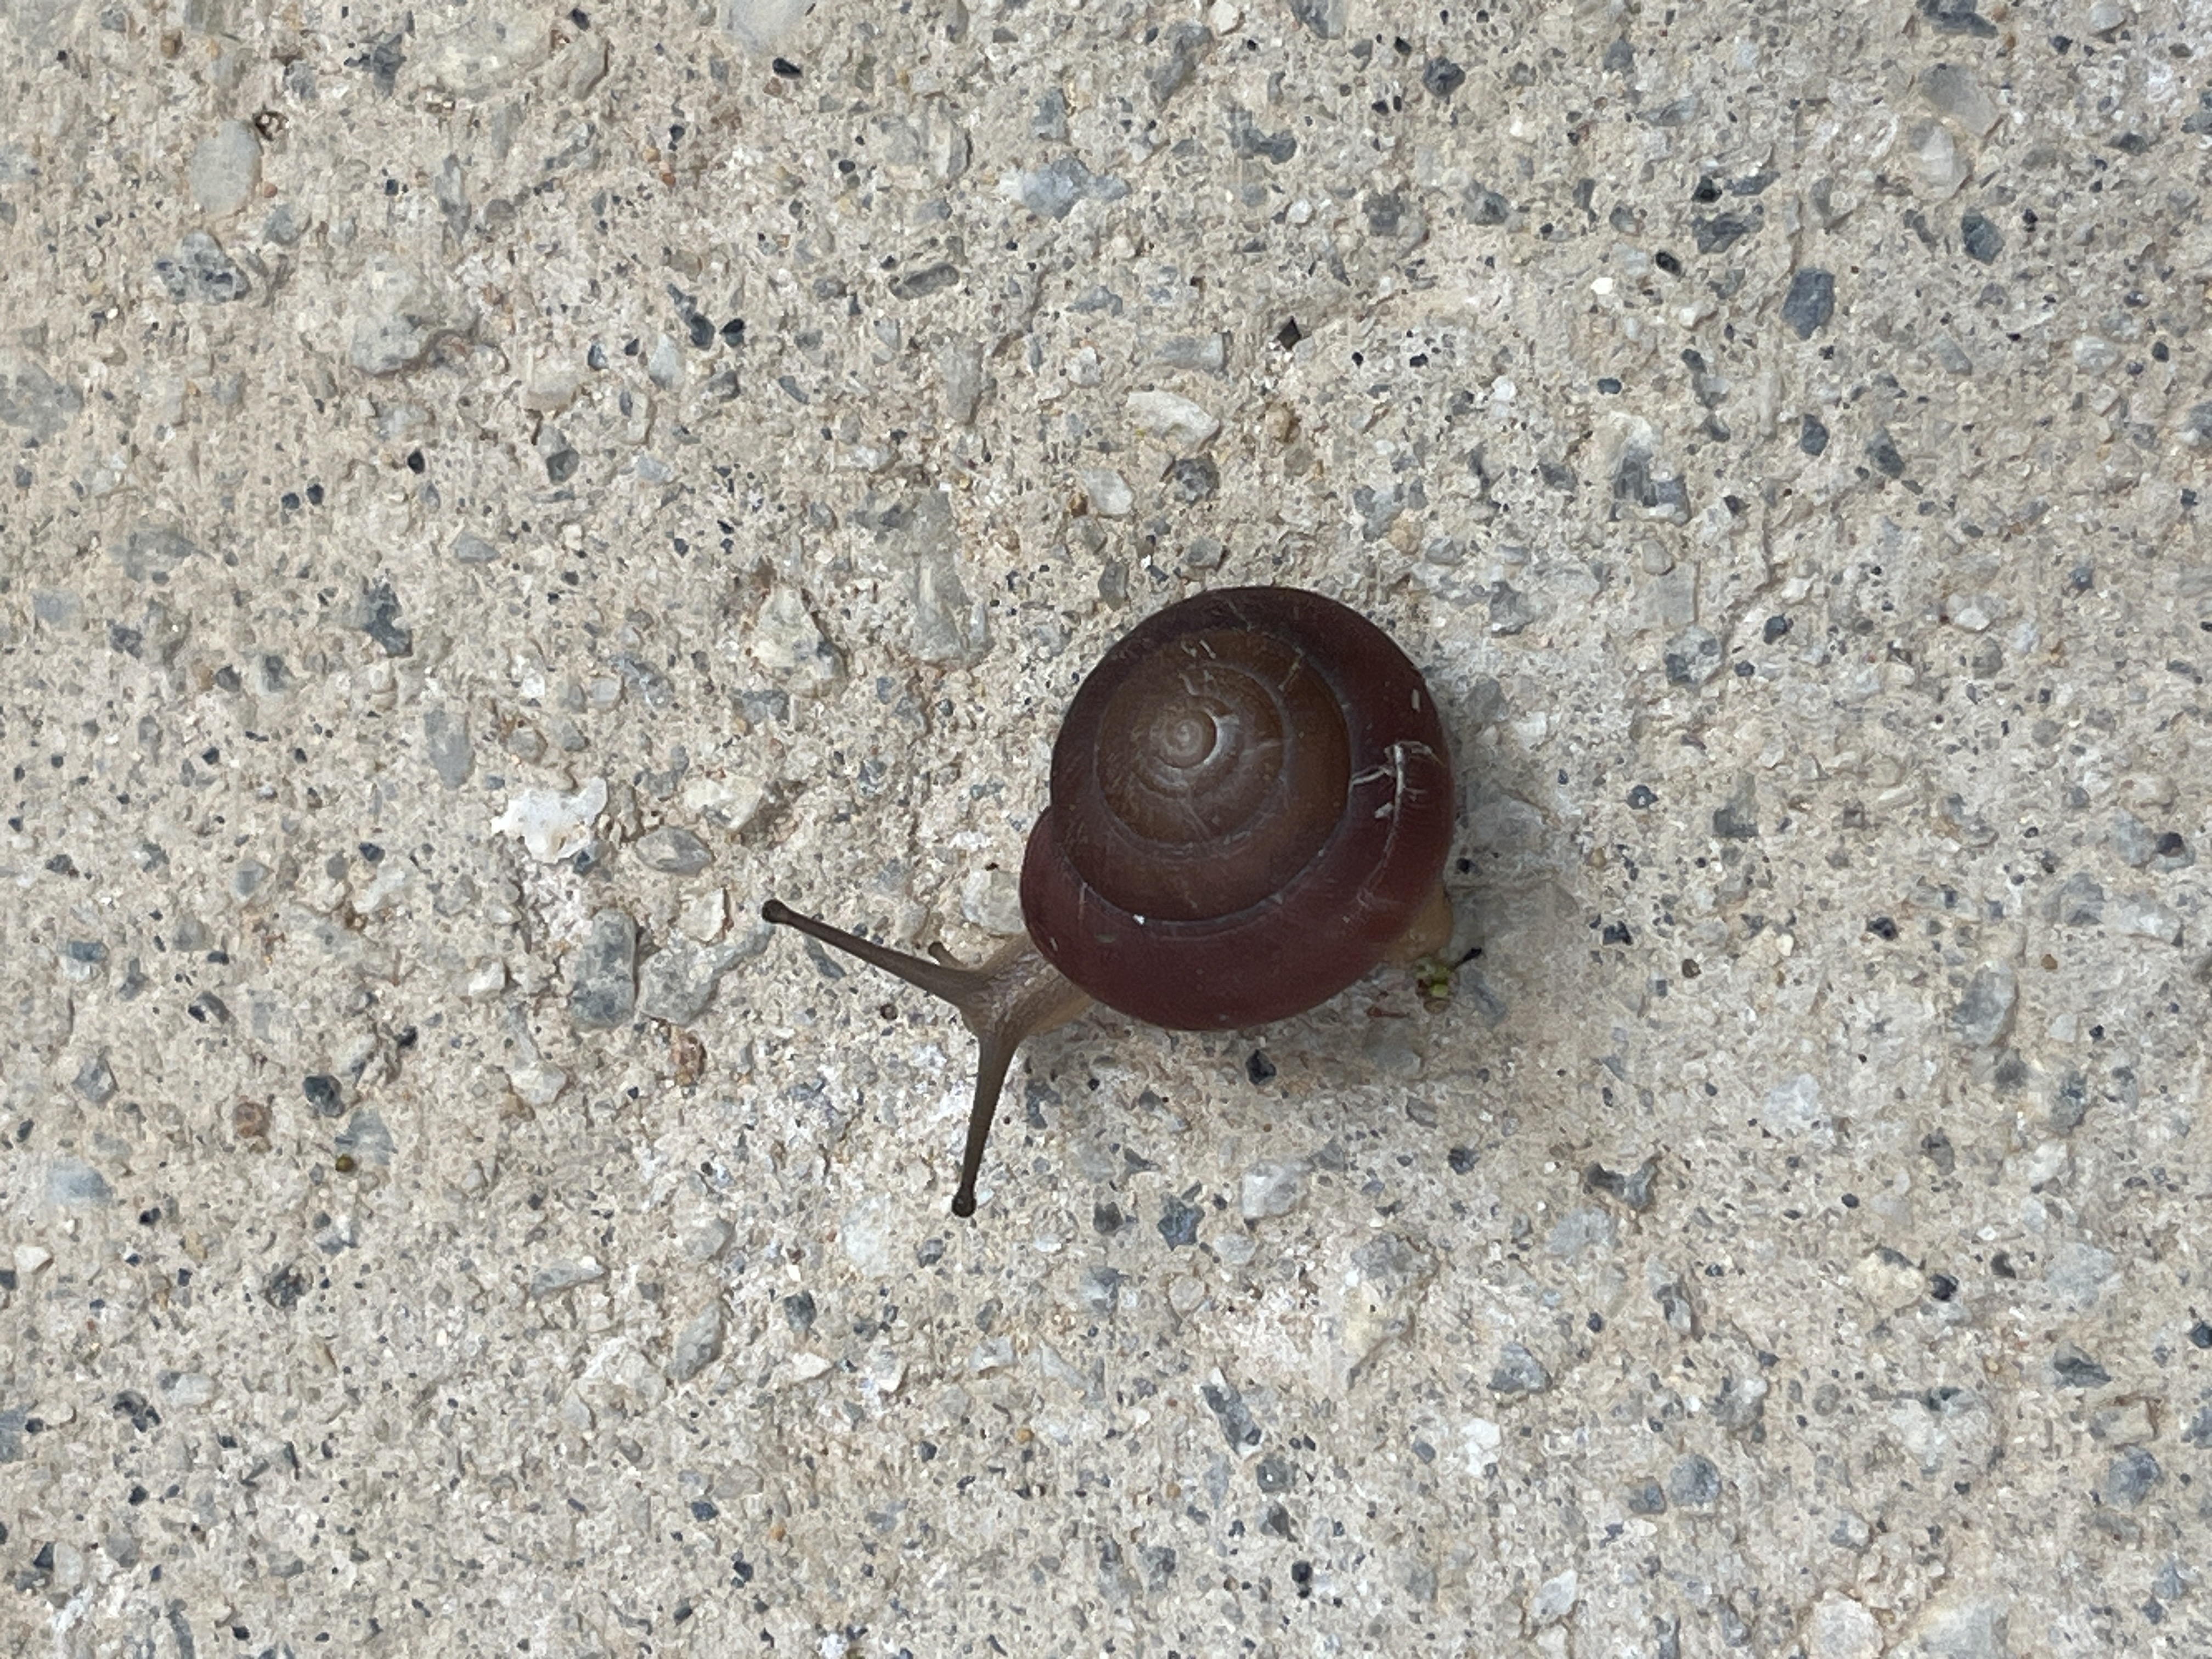 Blinking snail 